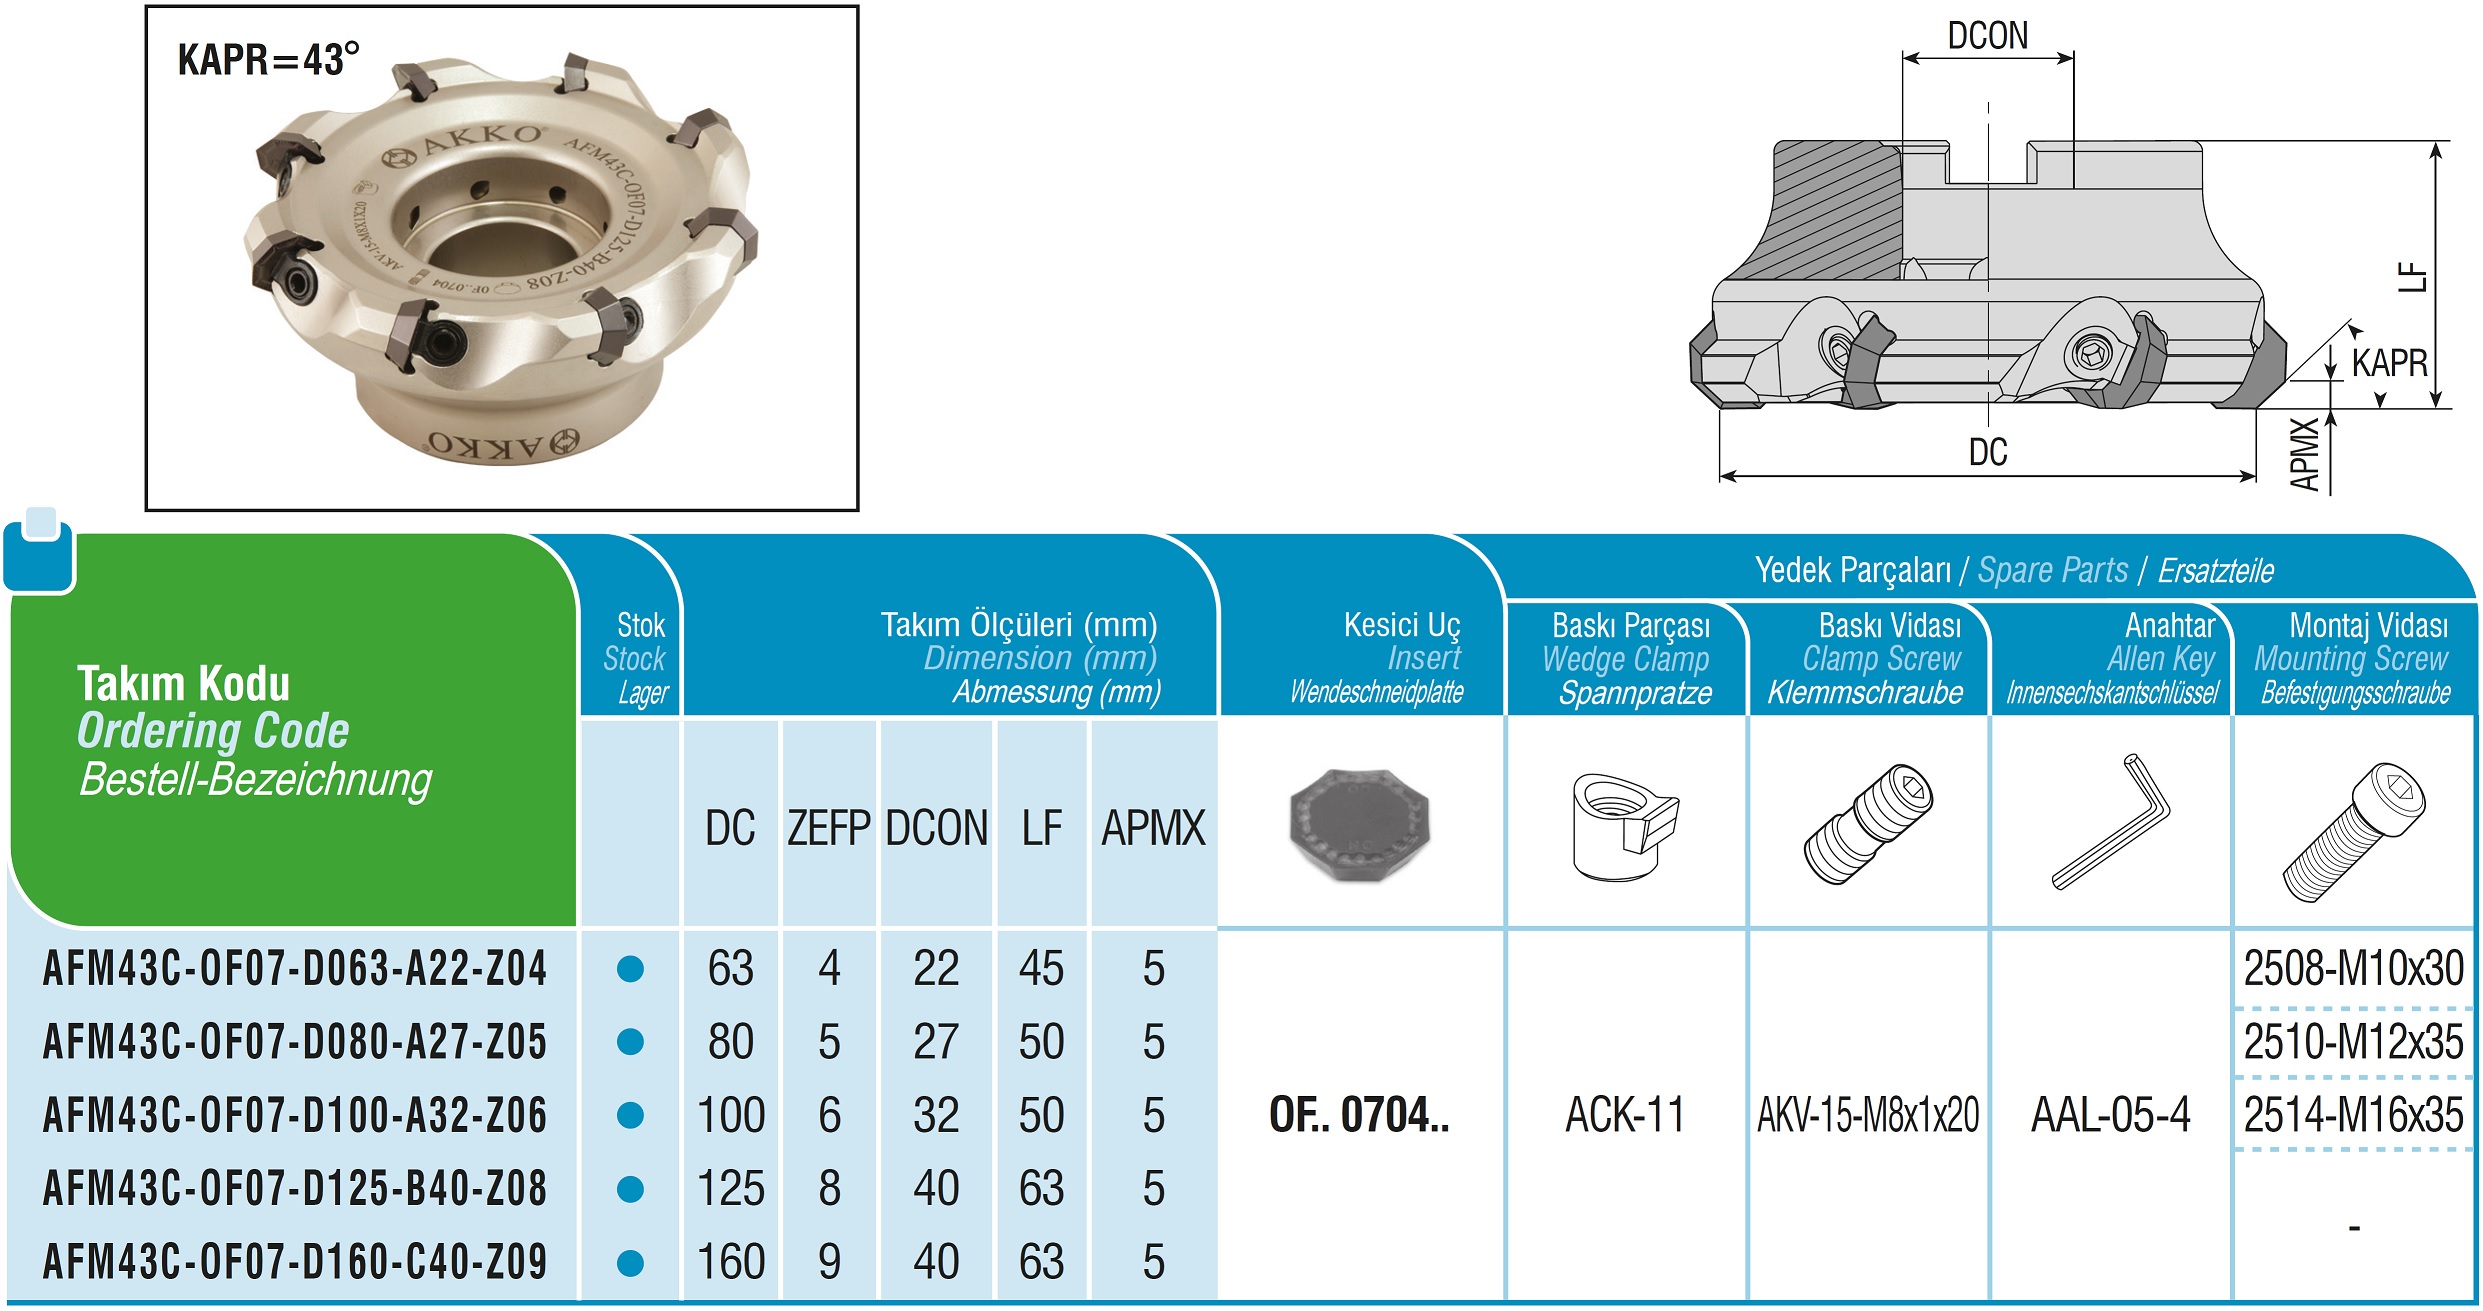 AKKO-Planmesserkopf ø 100 mm, 43° Anstellwinkel, kompatibel mit ISO OF.. 0704..
Schaft-Ausführung ø 32 mm (Typ A), ohne Innenkühlung, Z=6